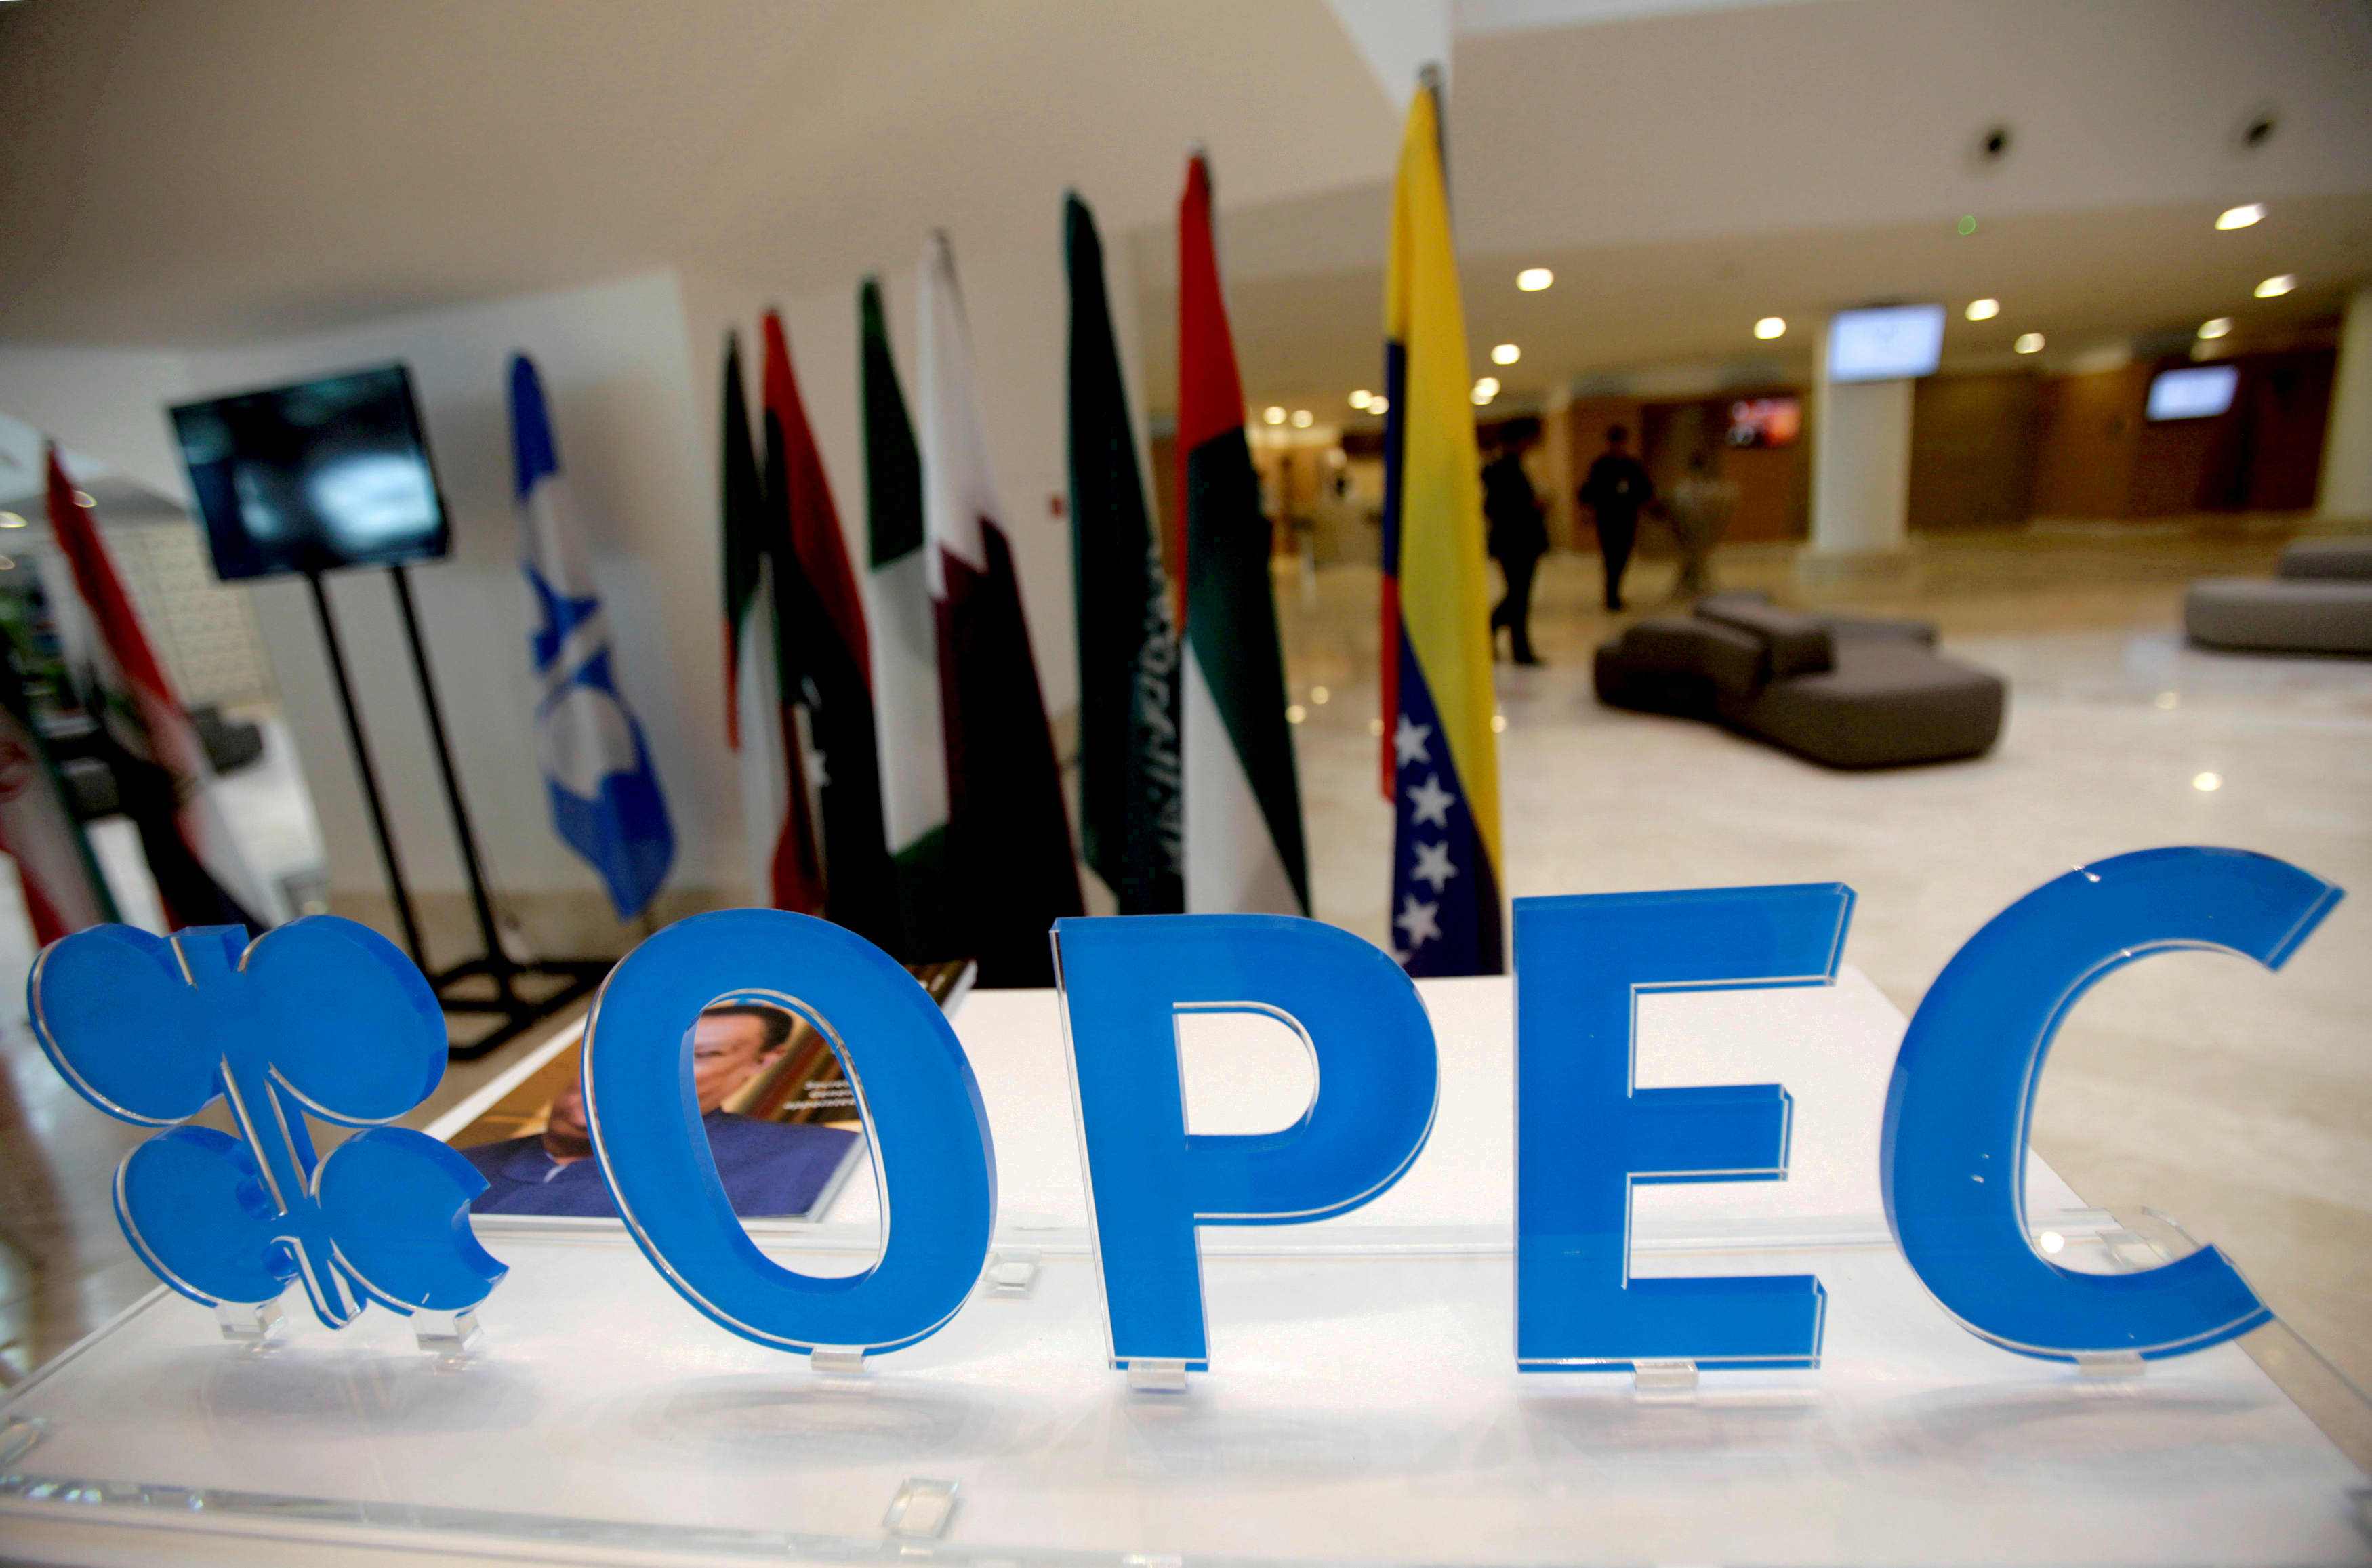 Trois choses à surveiller lors de la réunion de l'OPEP, y compris une réduction de l'offre susceptible de déplacer le marché